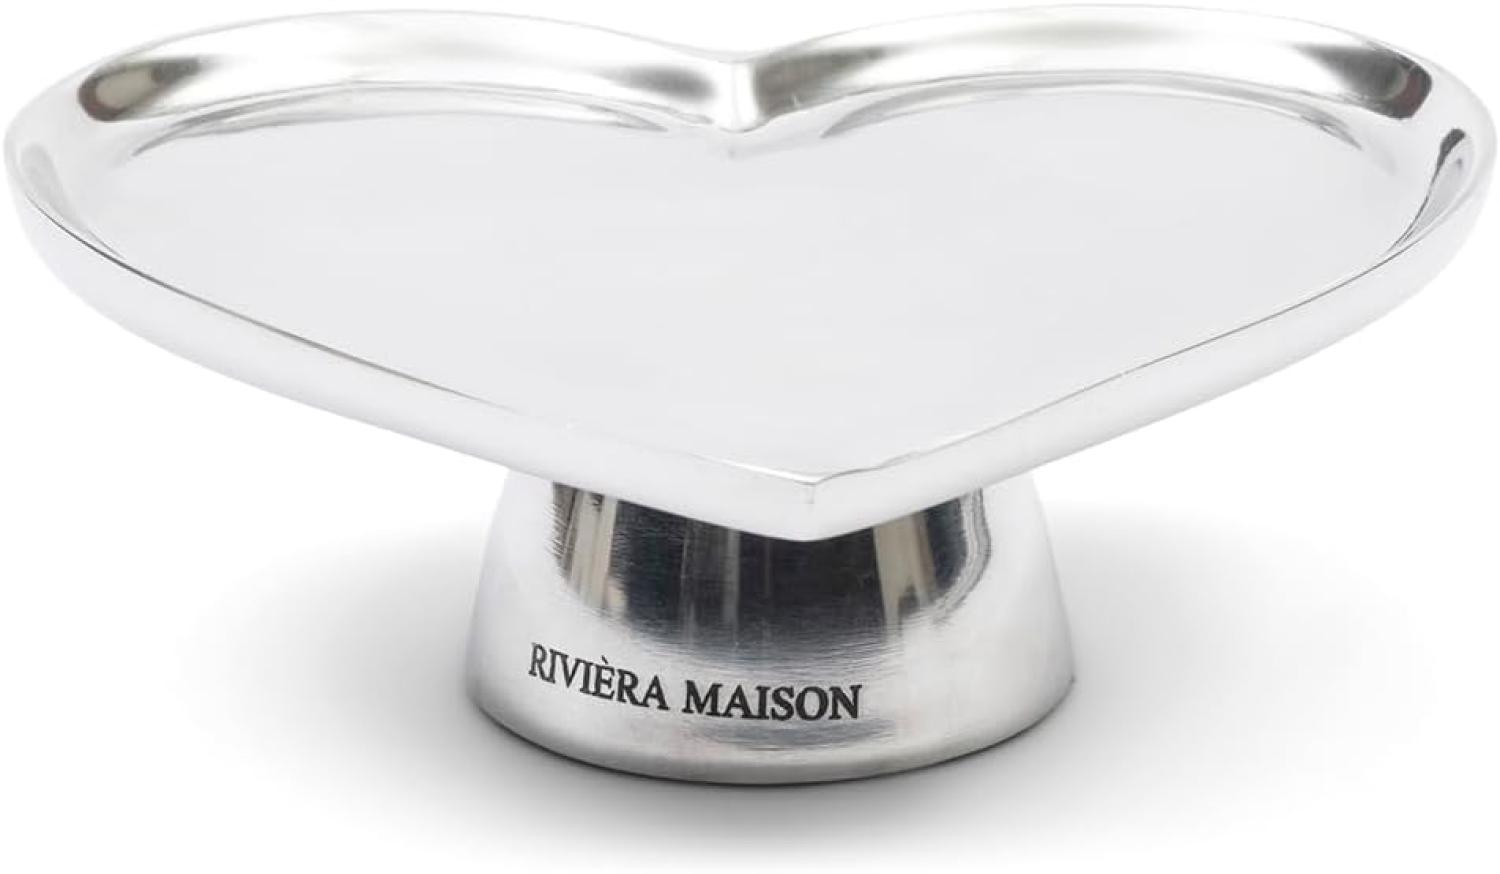 Riviera Maison Kuchenplatte Herz Heart Cake Stand 538020 Bild 1